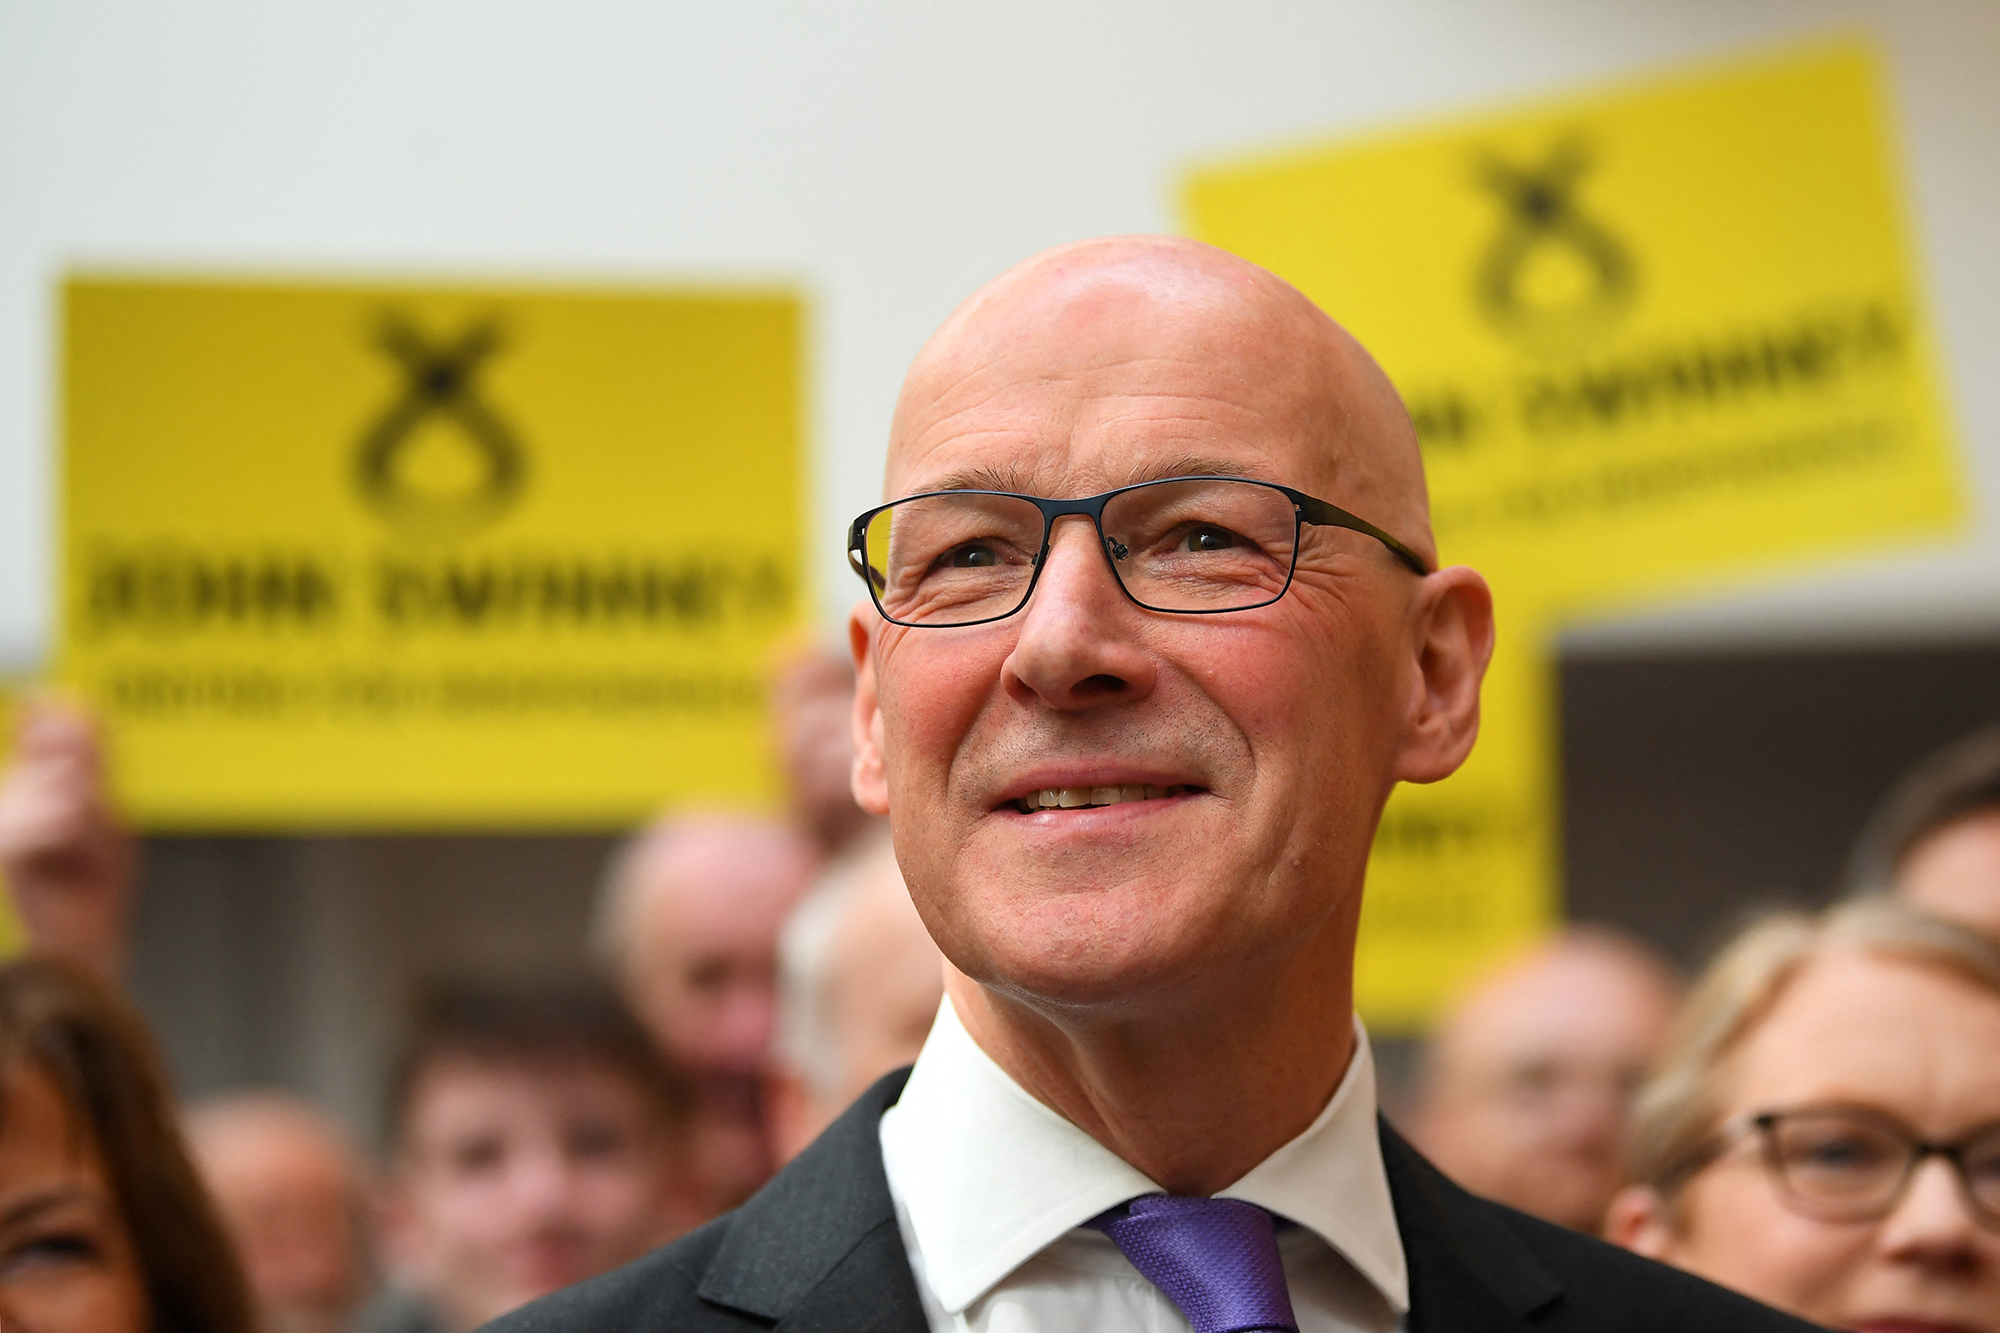 John Swinney wird neuer Regierungschef in Schottland